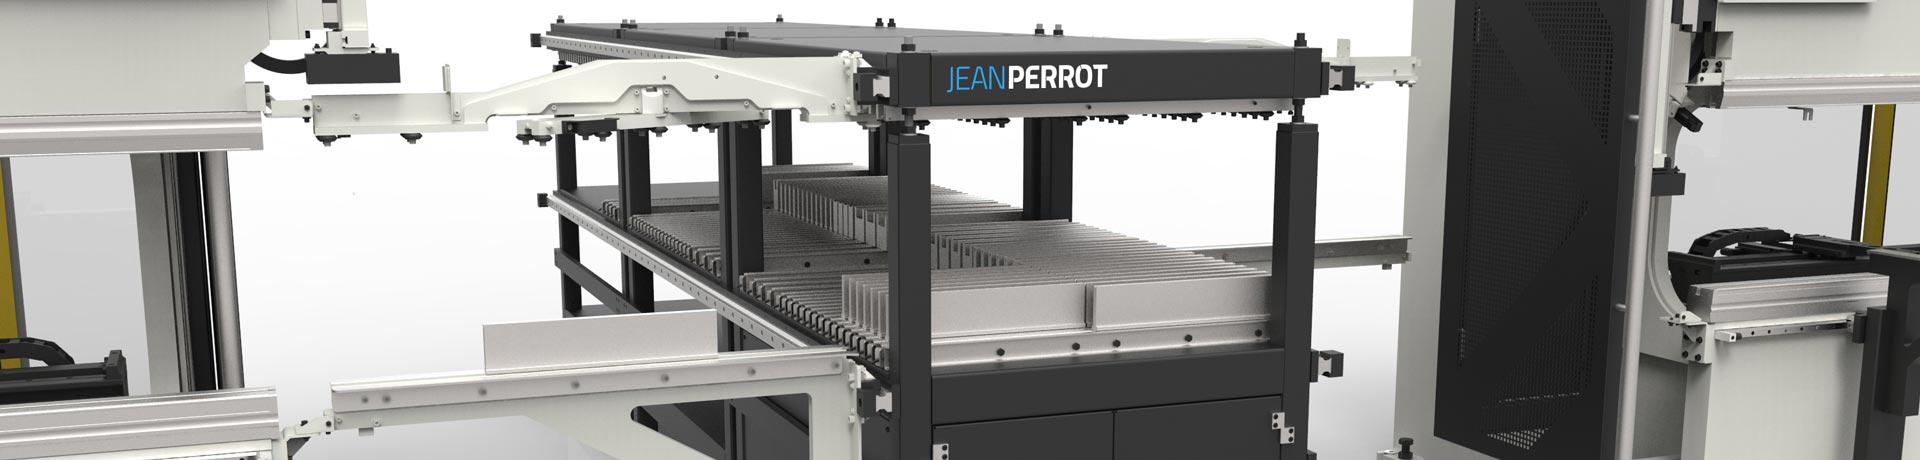 Jean Perrot propose des équipements périphériques sur-mesure afin de vous livrer des machines de pliage clés en main qui correspondent réellement à vos besoins